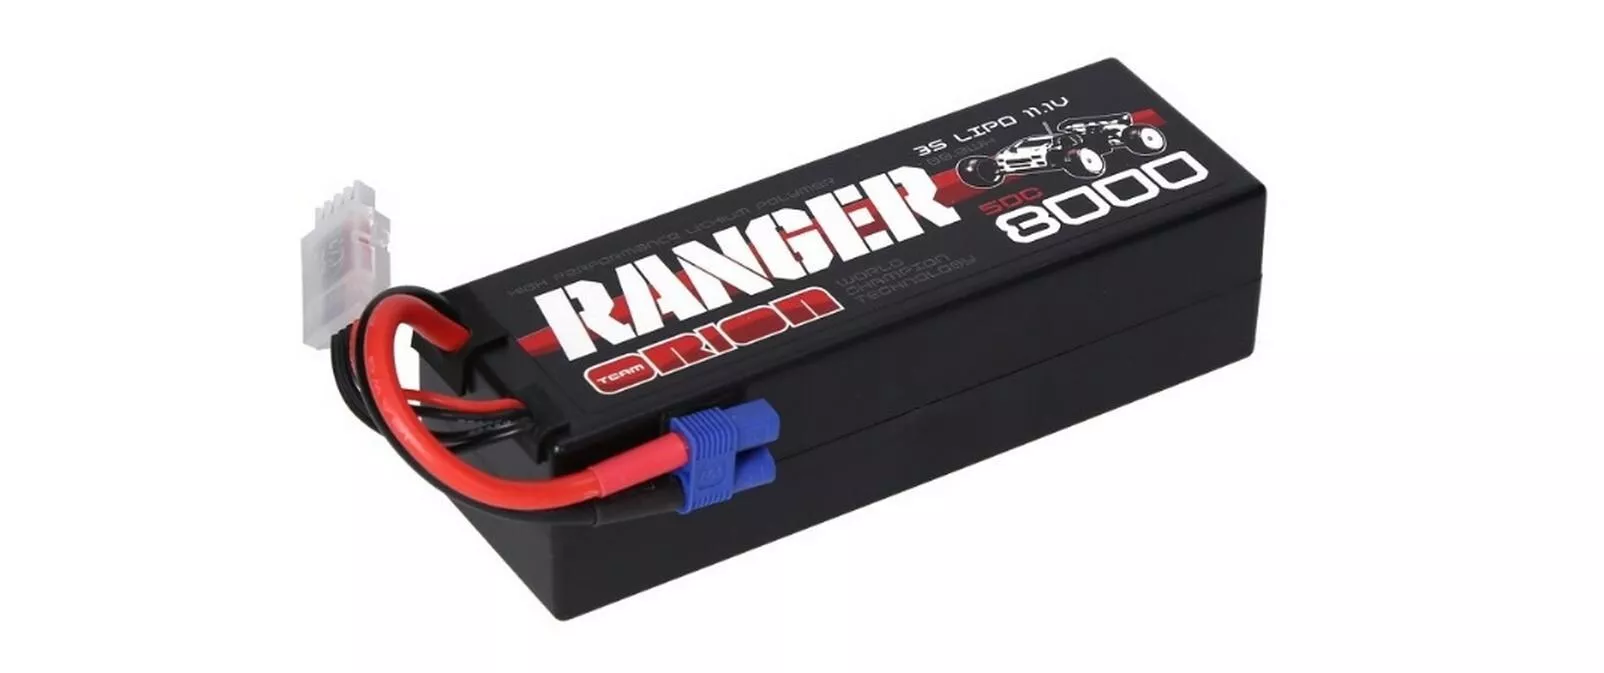 Batterie RC LiPo 8000 mAh 11.1 V Ranger, EC3